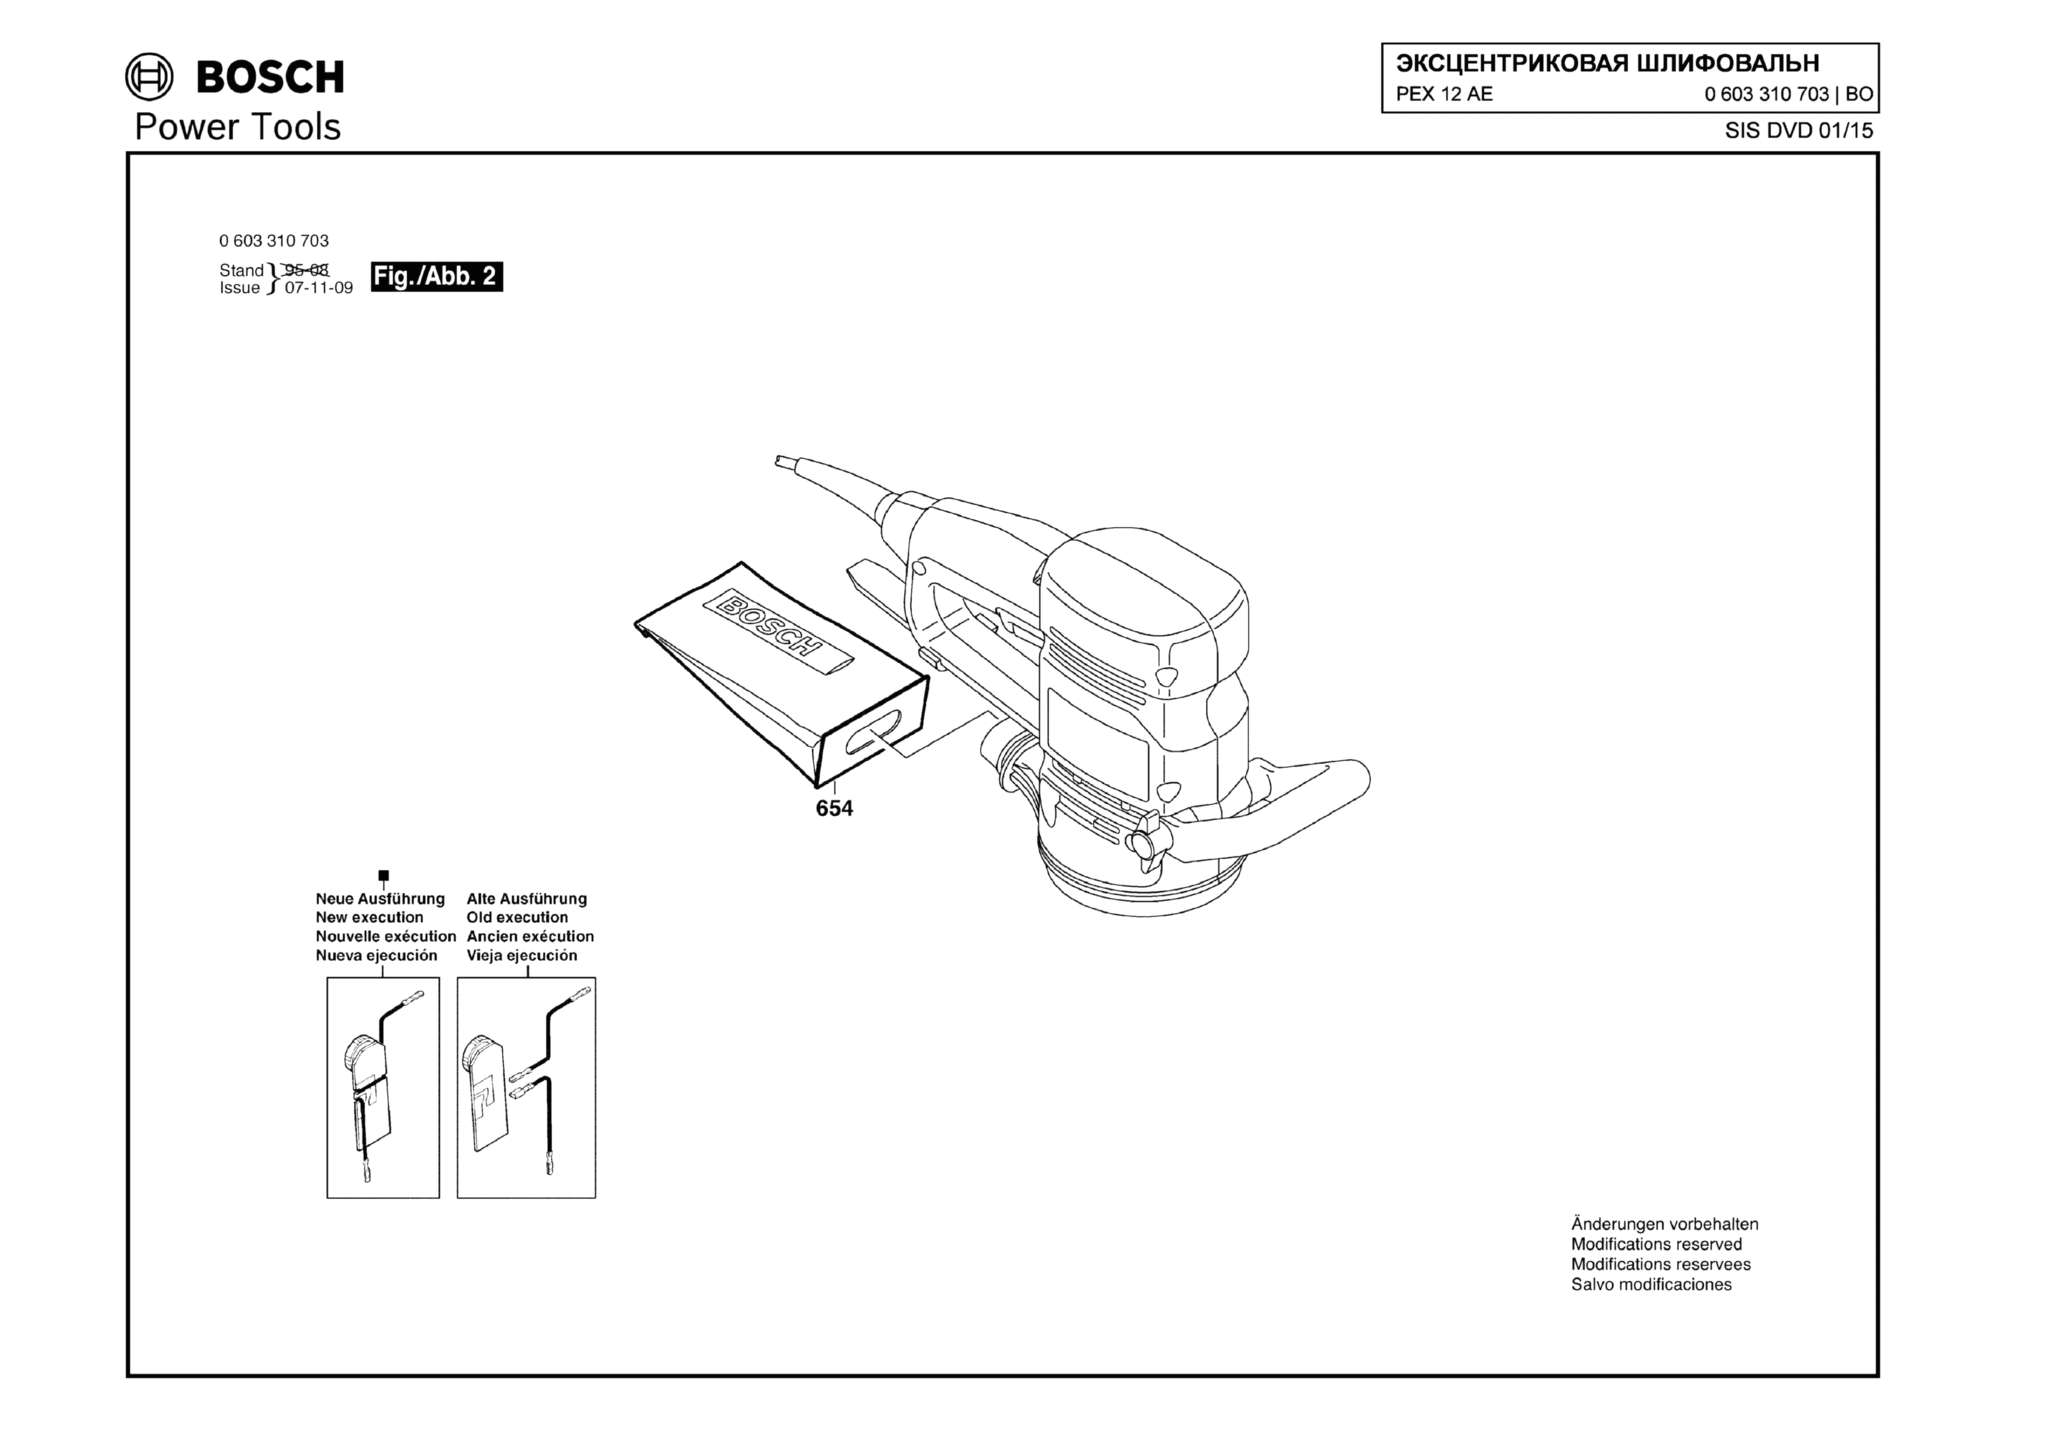 Запчасти, схема и деталировка Bosch PEX 12 AE (ТИП 0603310708) (ЧАСТЬ 2)